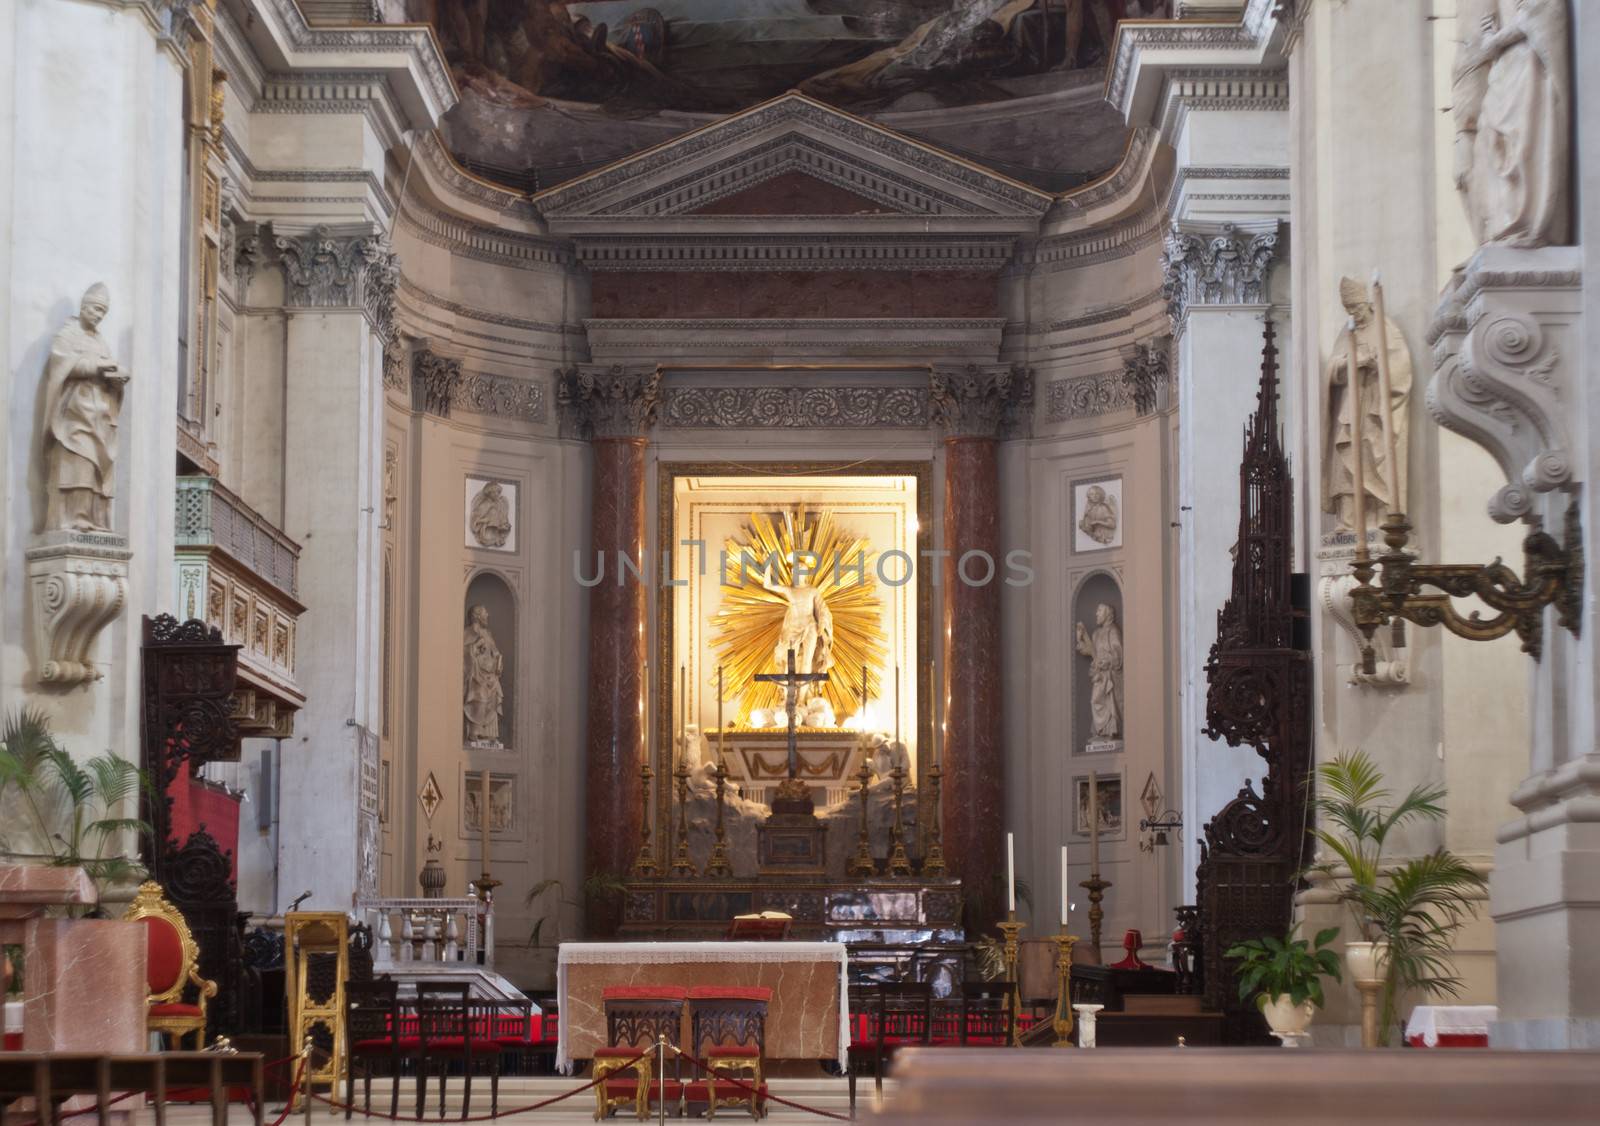 Interior of Palermo Cathedral, Sicily by gandolfocannatella